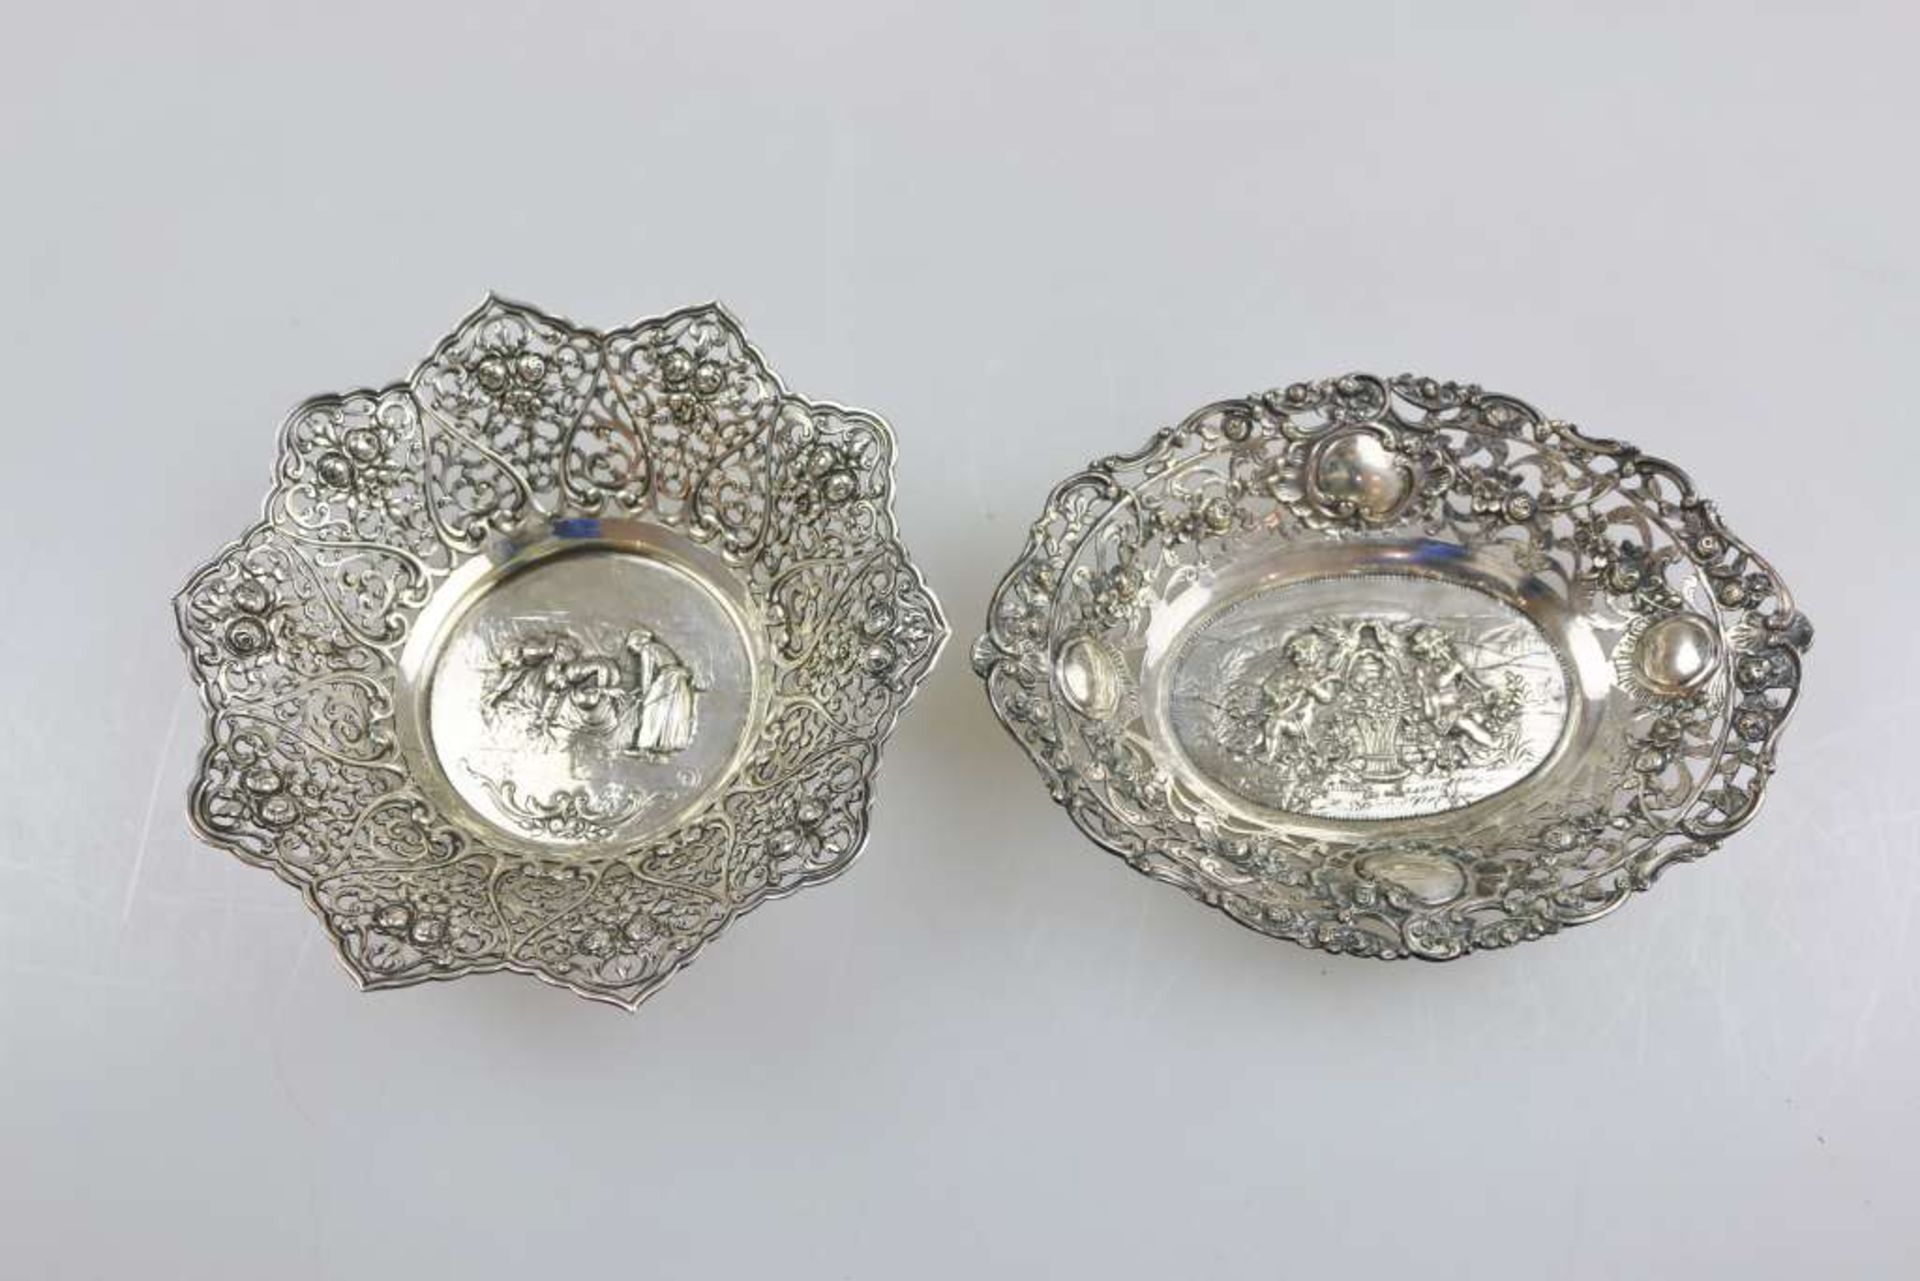 Zwei kleine Schalen, 800er Silber, 20. Jh., durchbrochner Fahne, floralem Dekor, Spiegel einmal